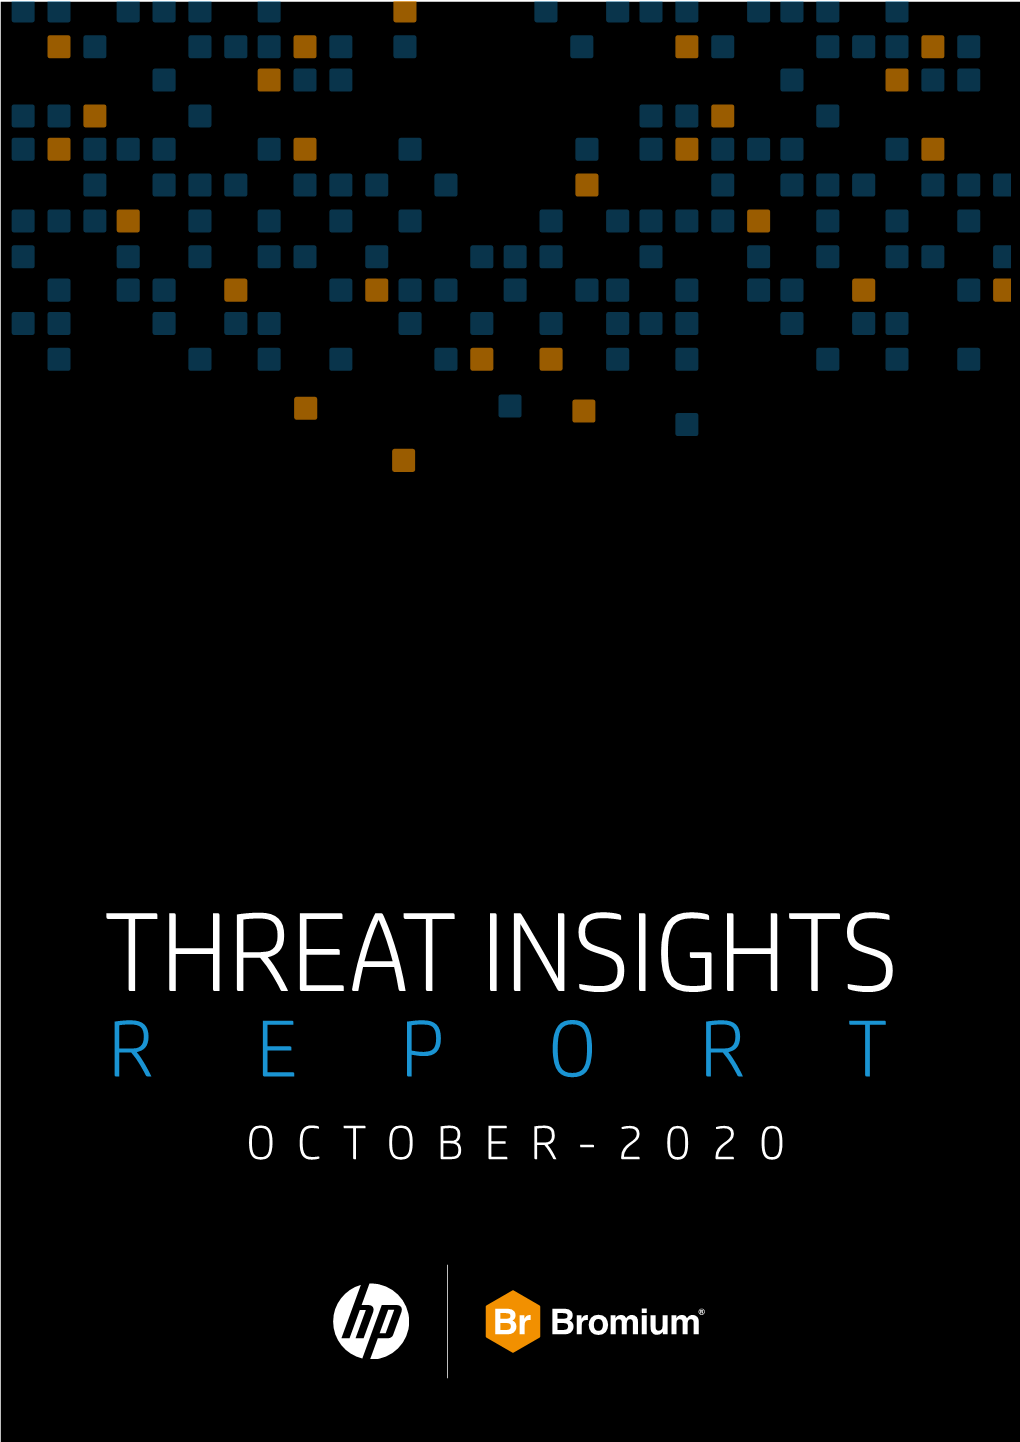 October 2020 HP-Bromium Threat Insights Report